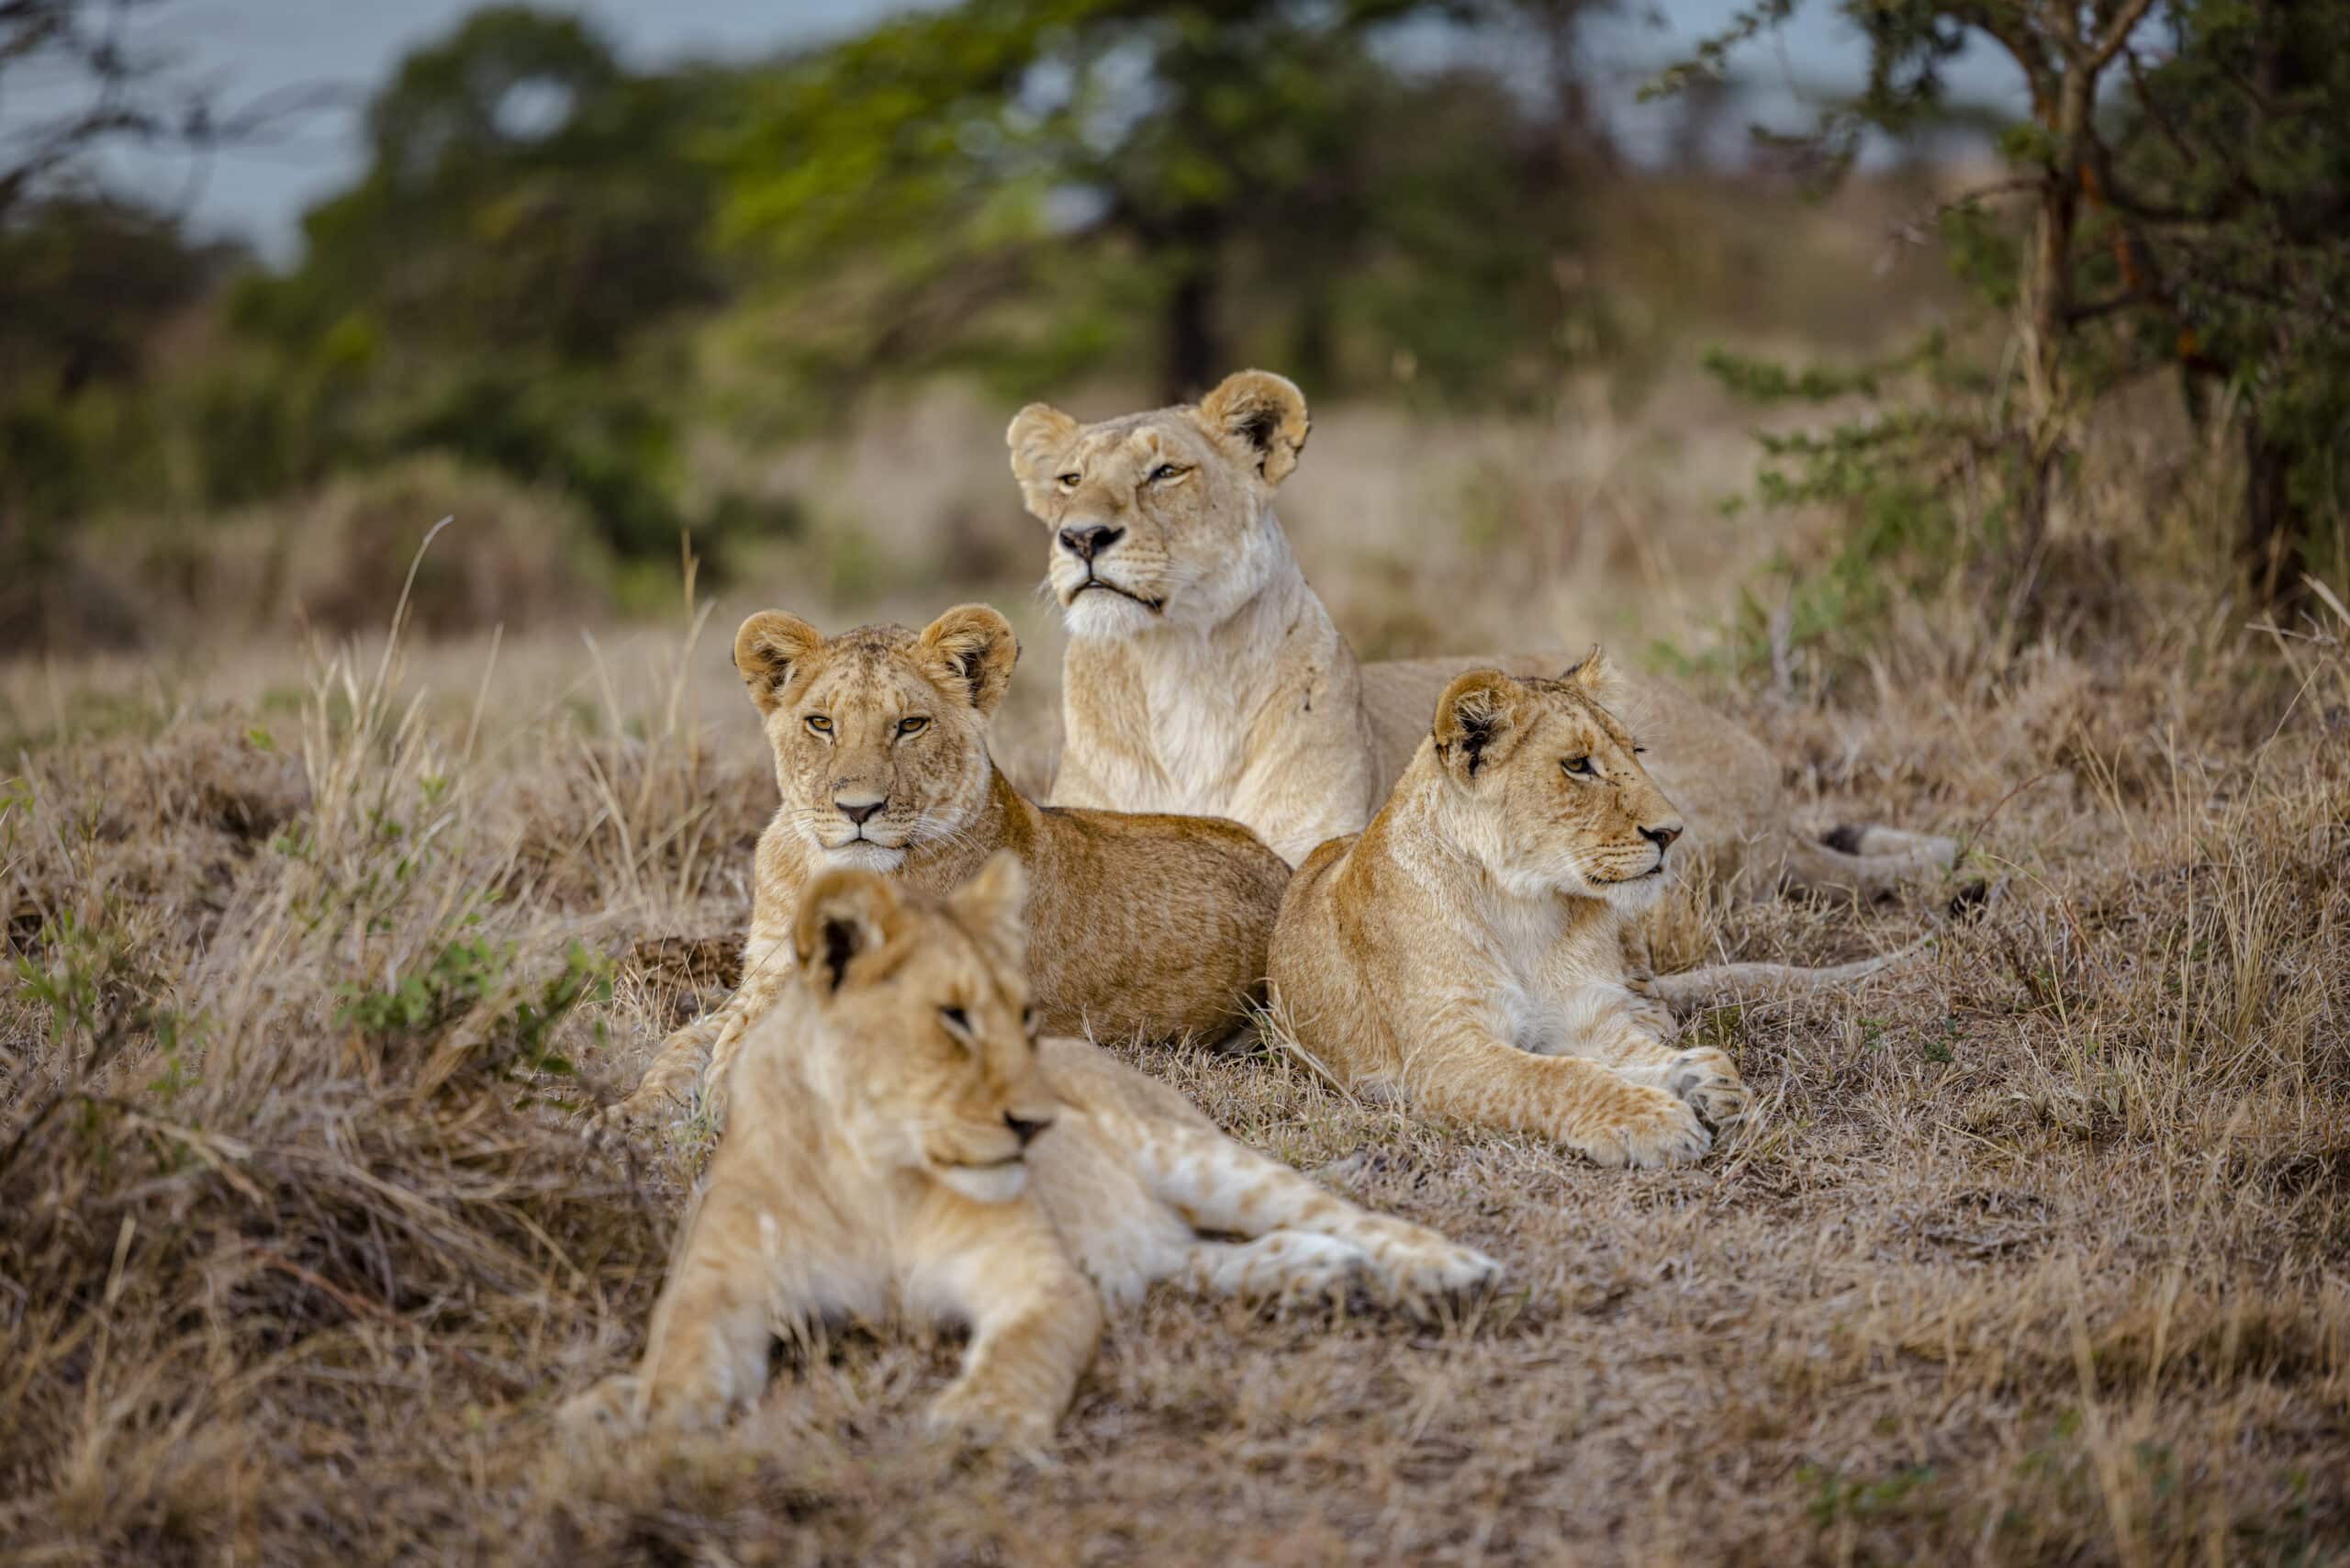 Vier Löwen faulenzen in einer grasbewachsenen Savanne mit Büschen und Bäumen im Hintergrund. Die Löwen wirken entspannt, zwei sitzen aufrecht, während zwei liegen und nach vorne blicken. © Fotografie Tomas Rodriguez